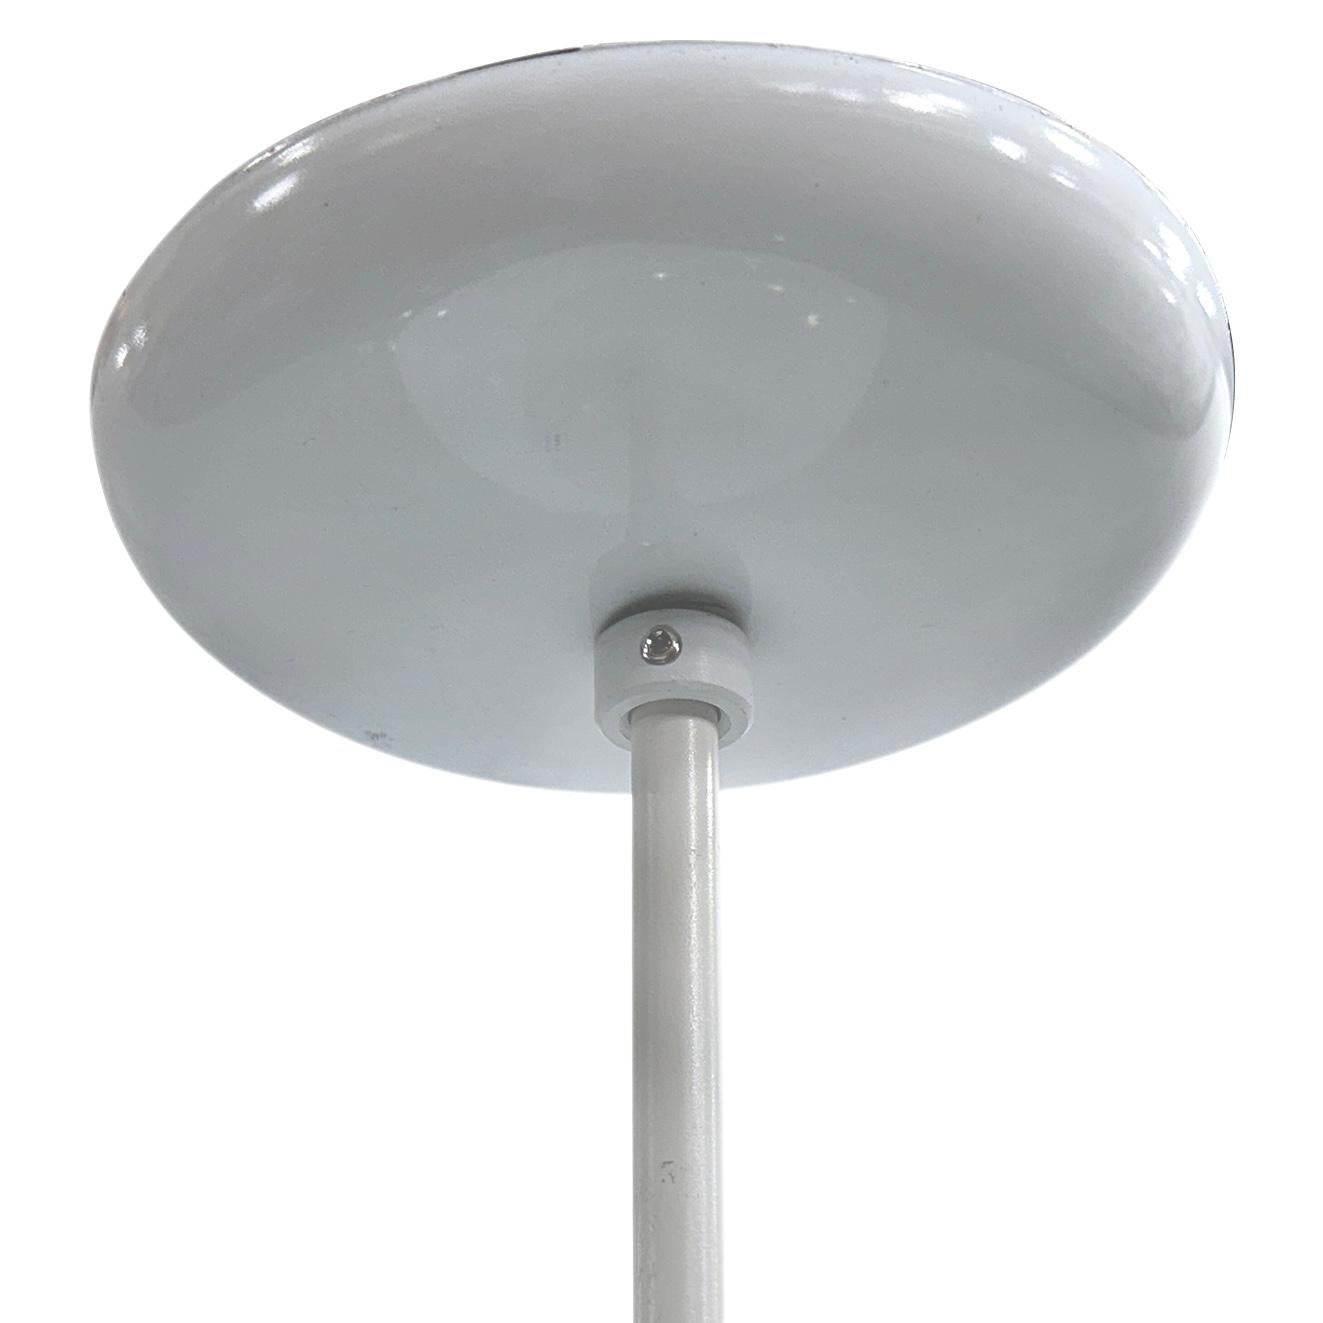 Ein Satz von 4 italienischen mundgeblasenen Glaskugellaternen aus den 1960er Jahren mit einer Edison-Glühbirne. Einzelverkauf.

Abmessungen:
Fallhöhe: 21